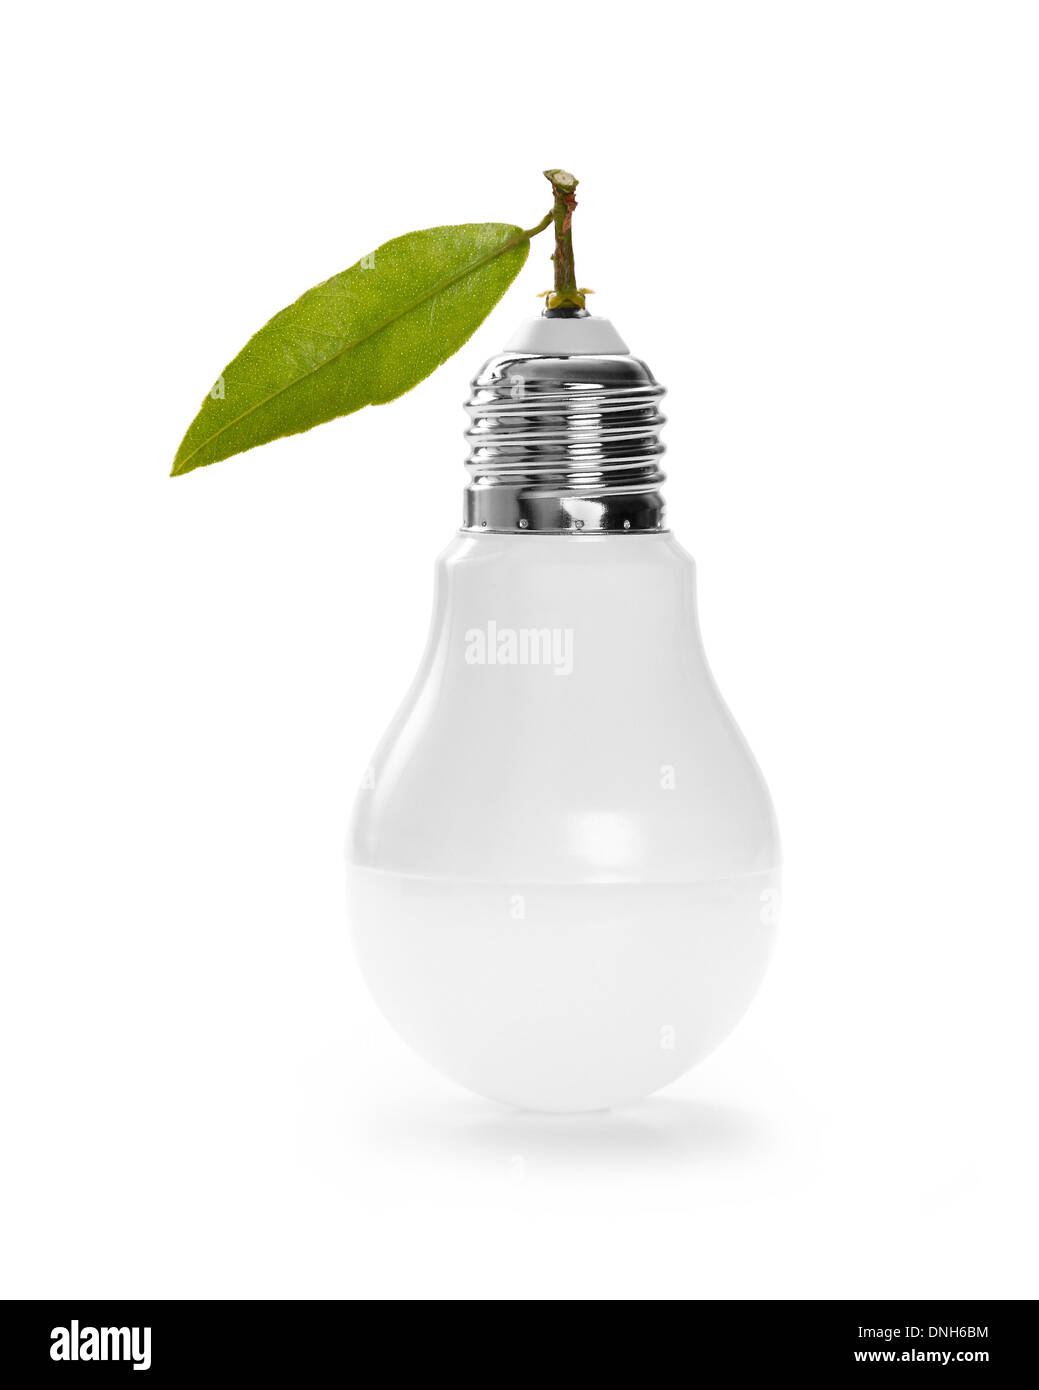 Lampe à LED avec feuille verte, ECO energy concept, Close up Banque D'Images